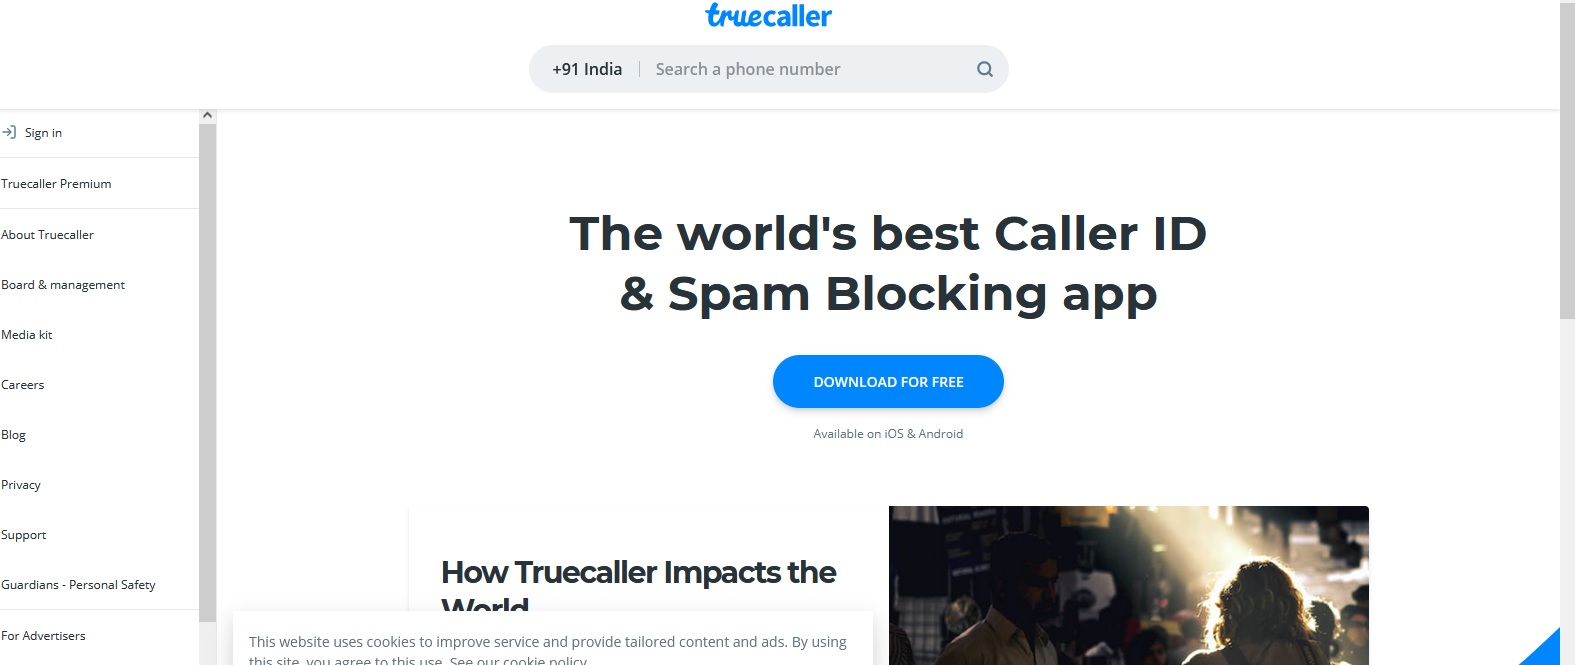 Amazing features of Truecaller app